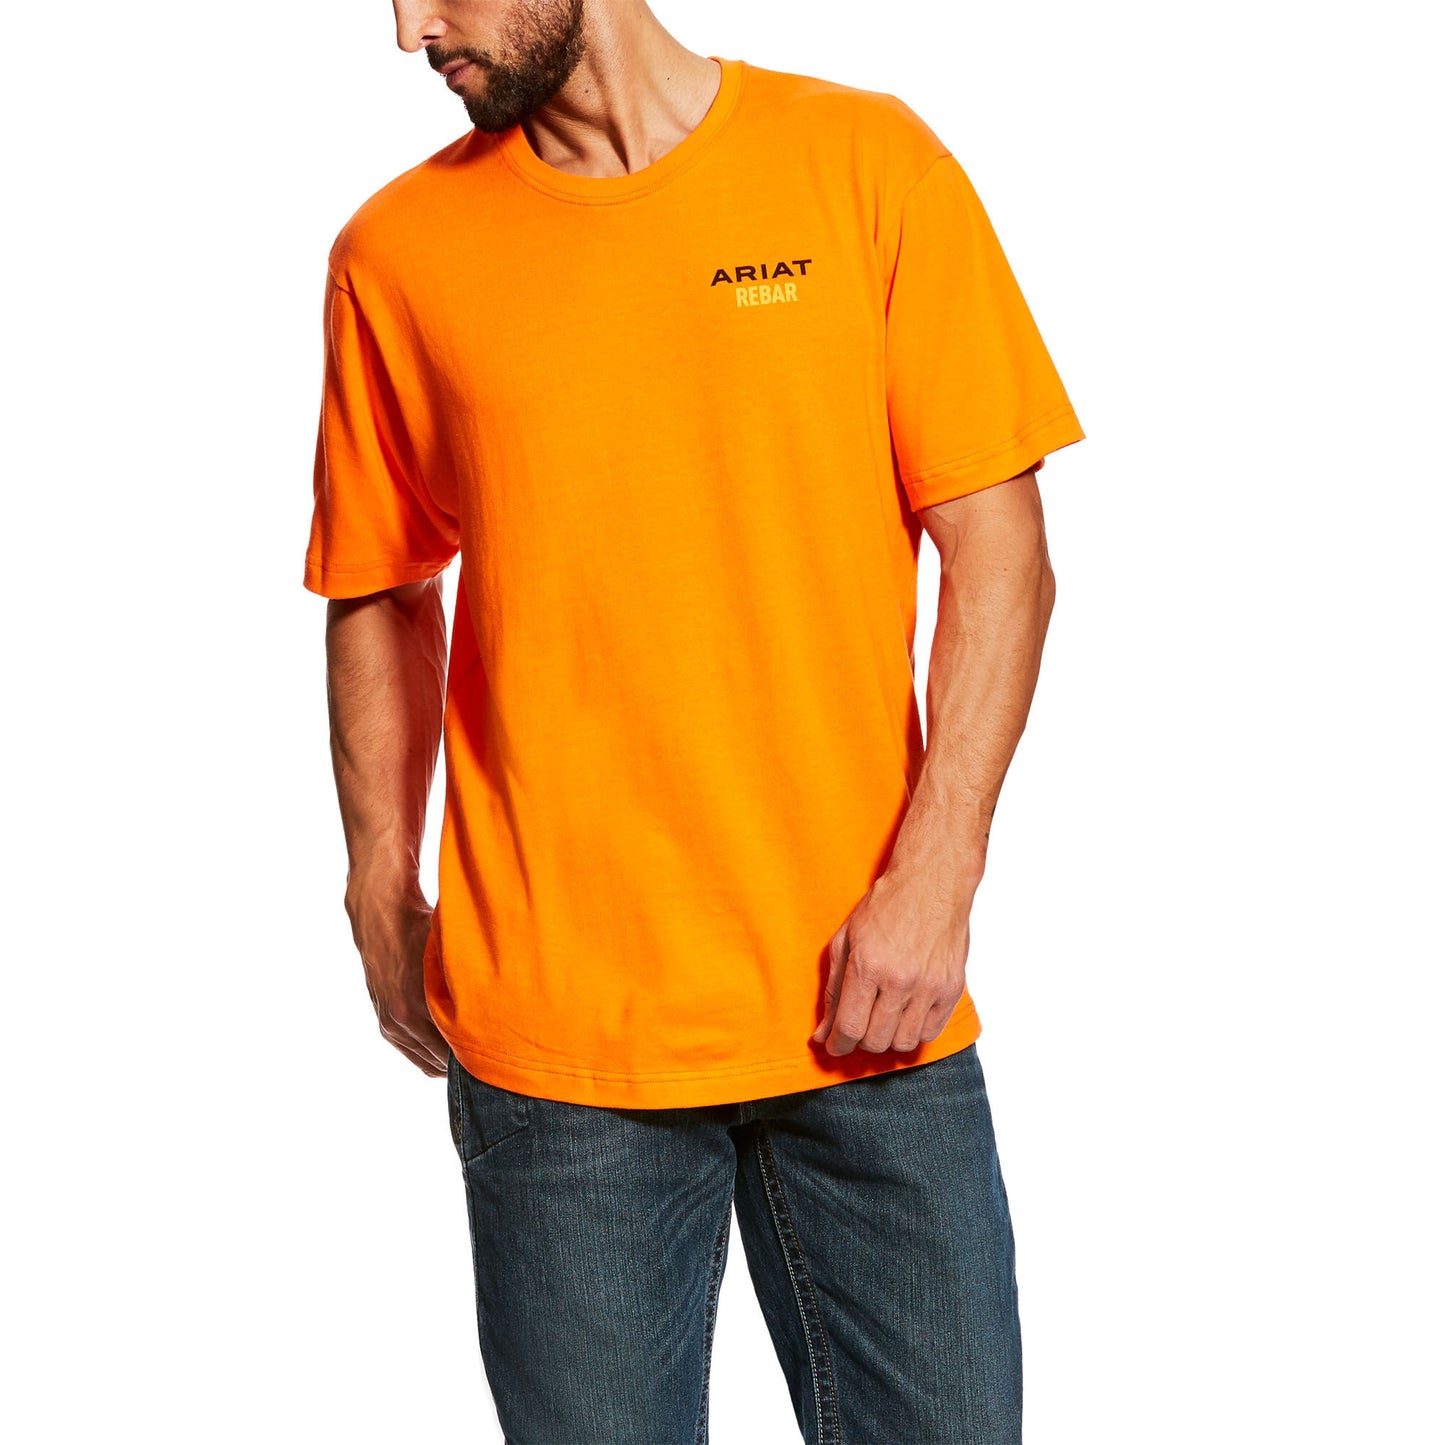 Ariat Men's Rebar Cotton Strong Logo T-Shirt - Safety Orange